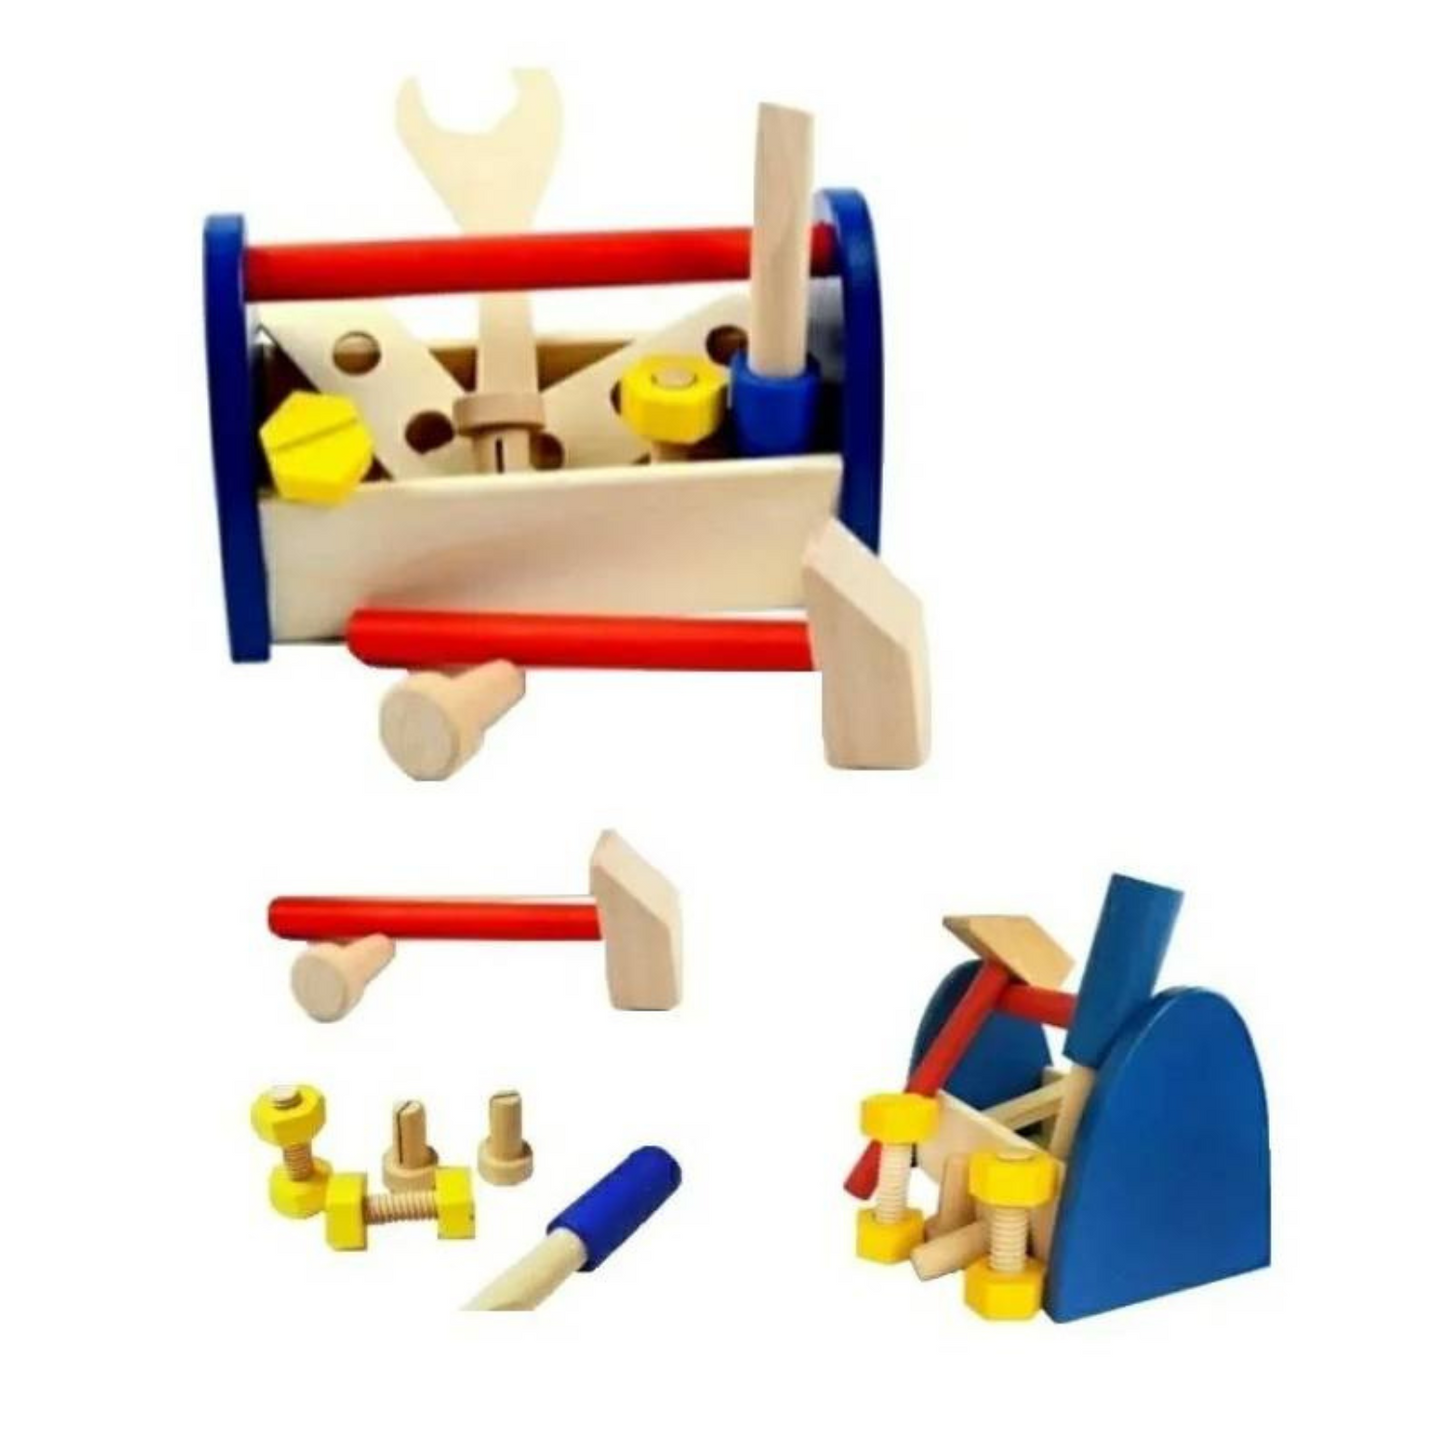 Kit de herramientas para niños, caja de herramientas de madera con juego de  juguetes de construcción colorido brillar Electrónica